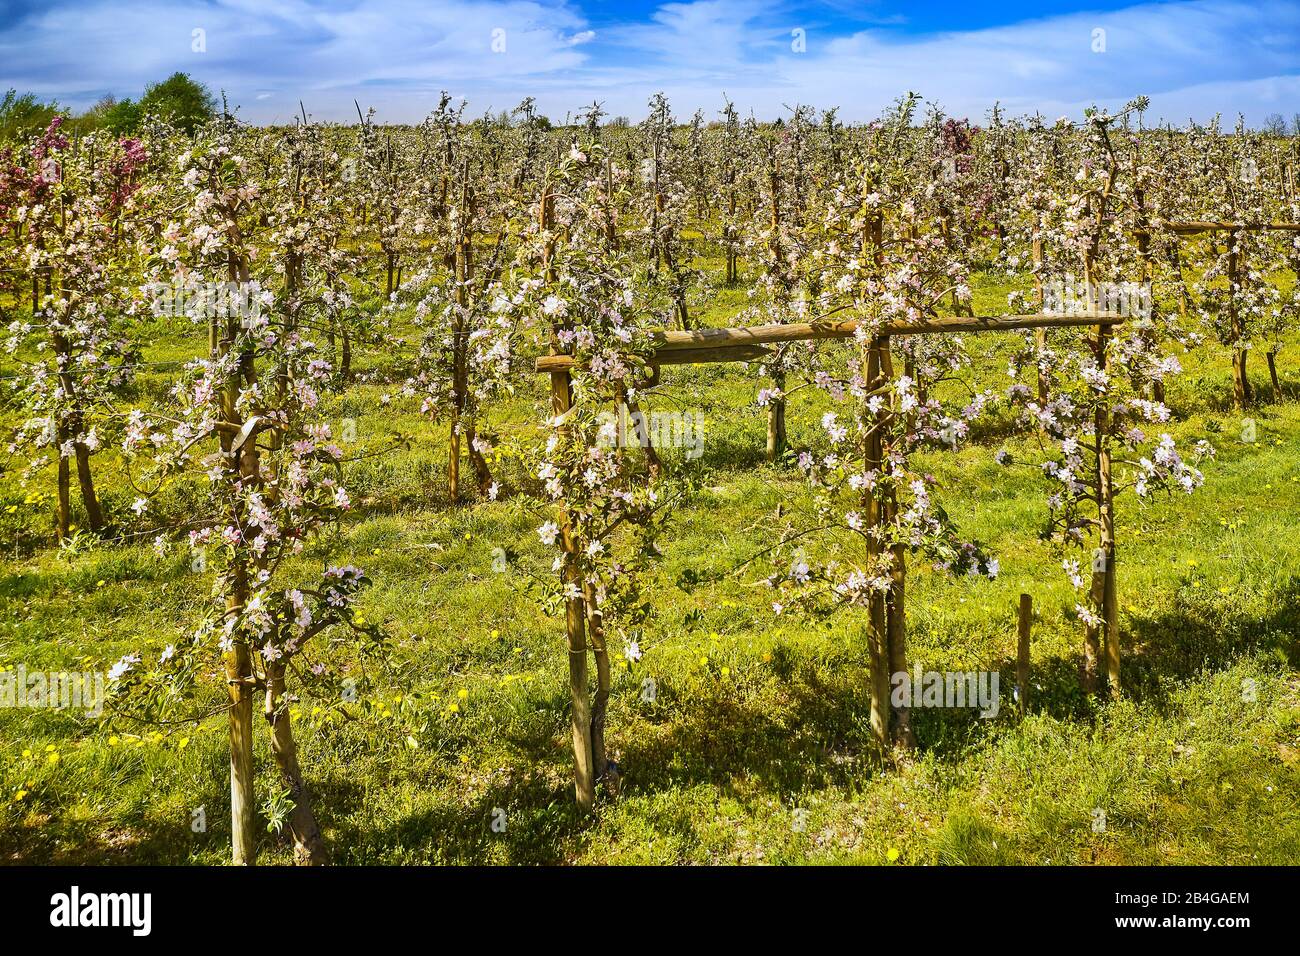 Germania, Bassa Sassonia, Altes Land, Jork, fiori di frutta, filari di alberi con alberi di mele in fiore Foto Stock